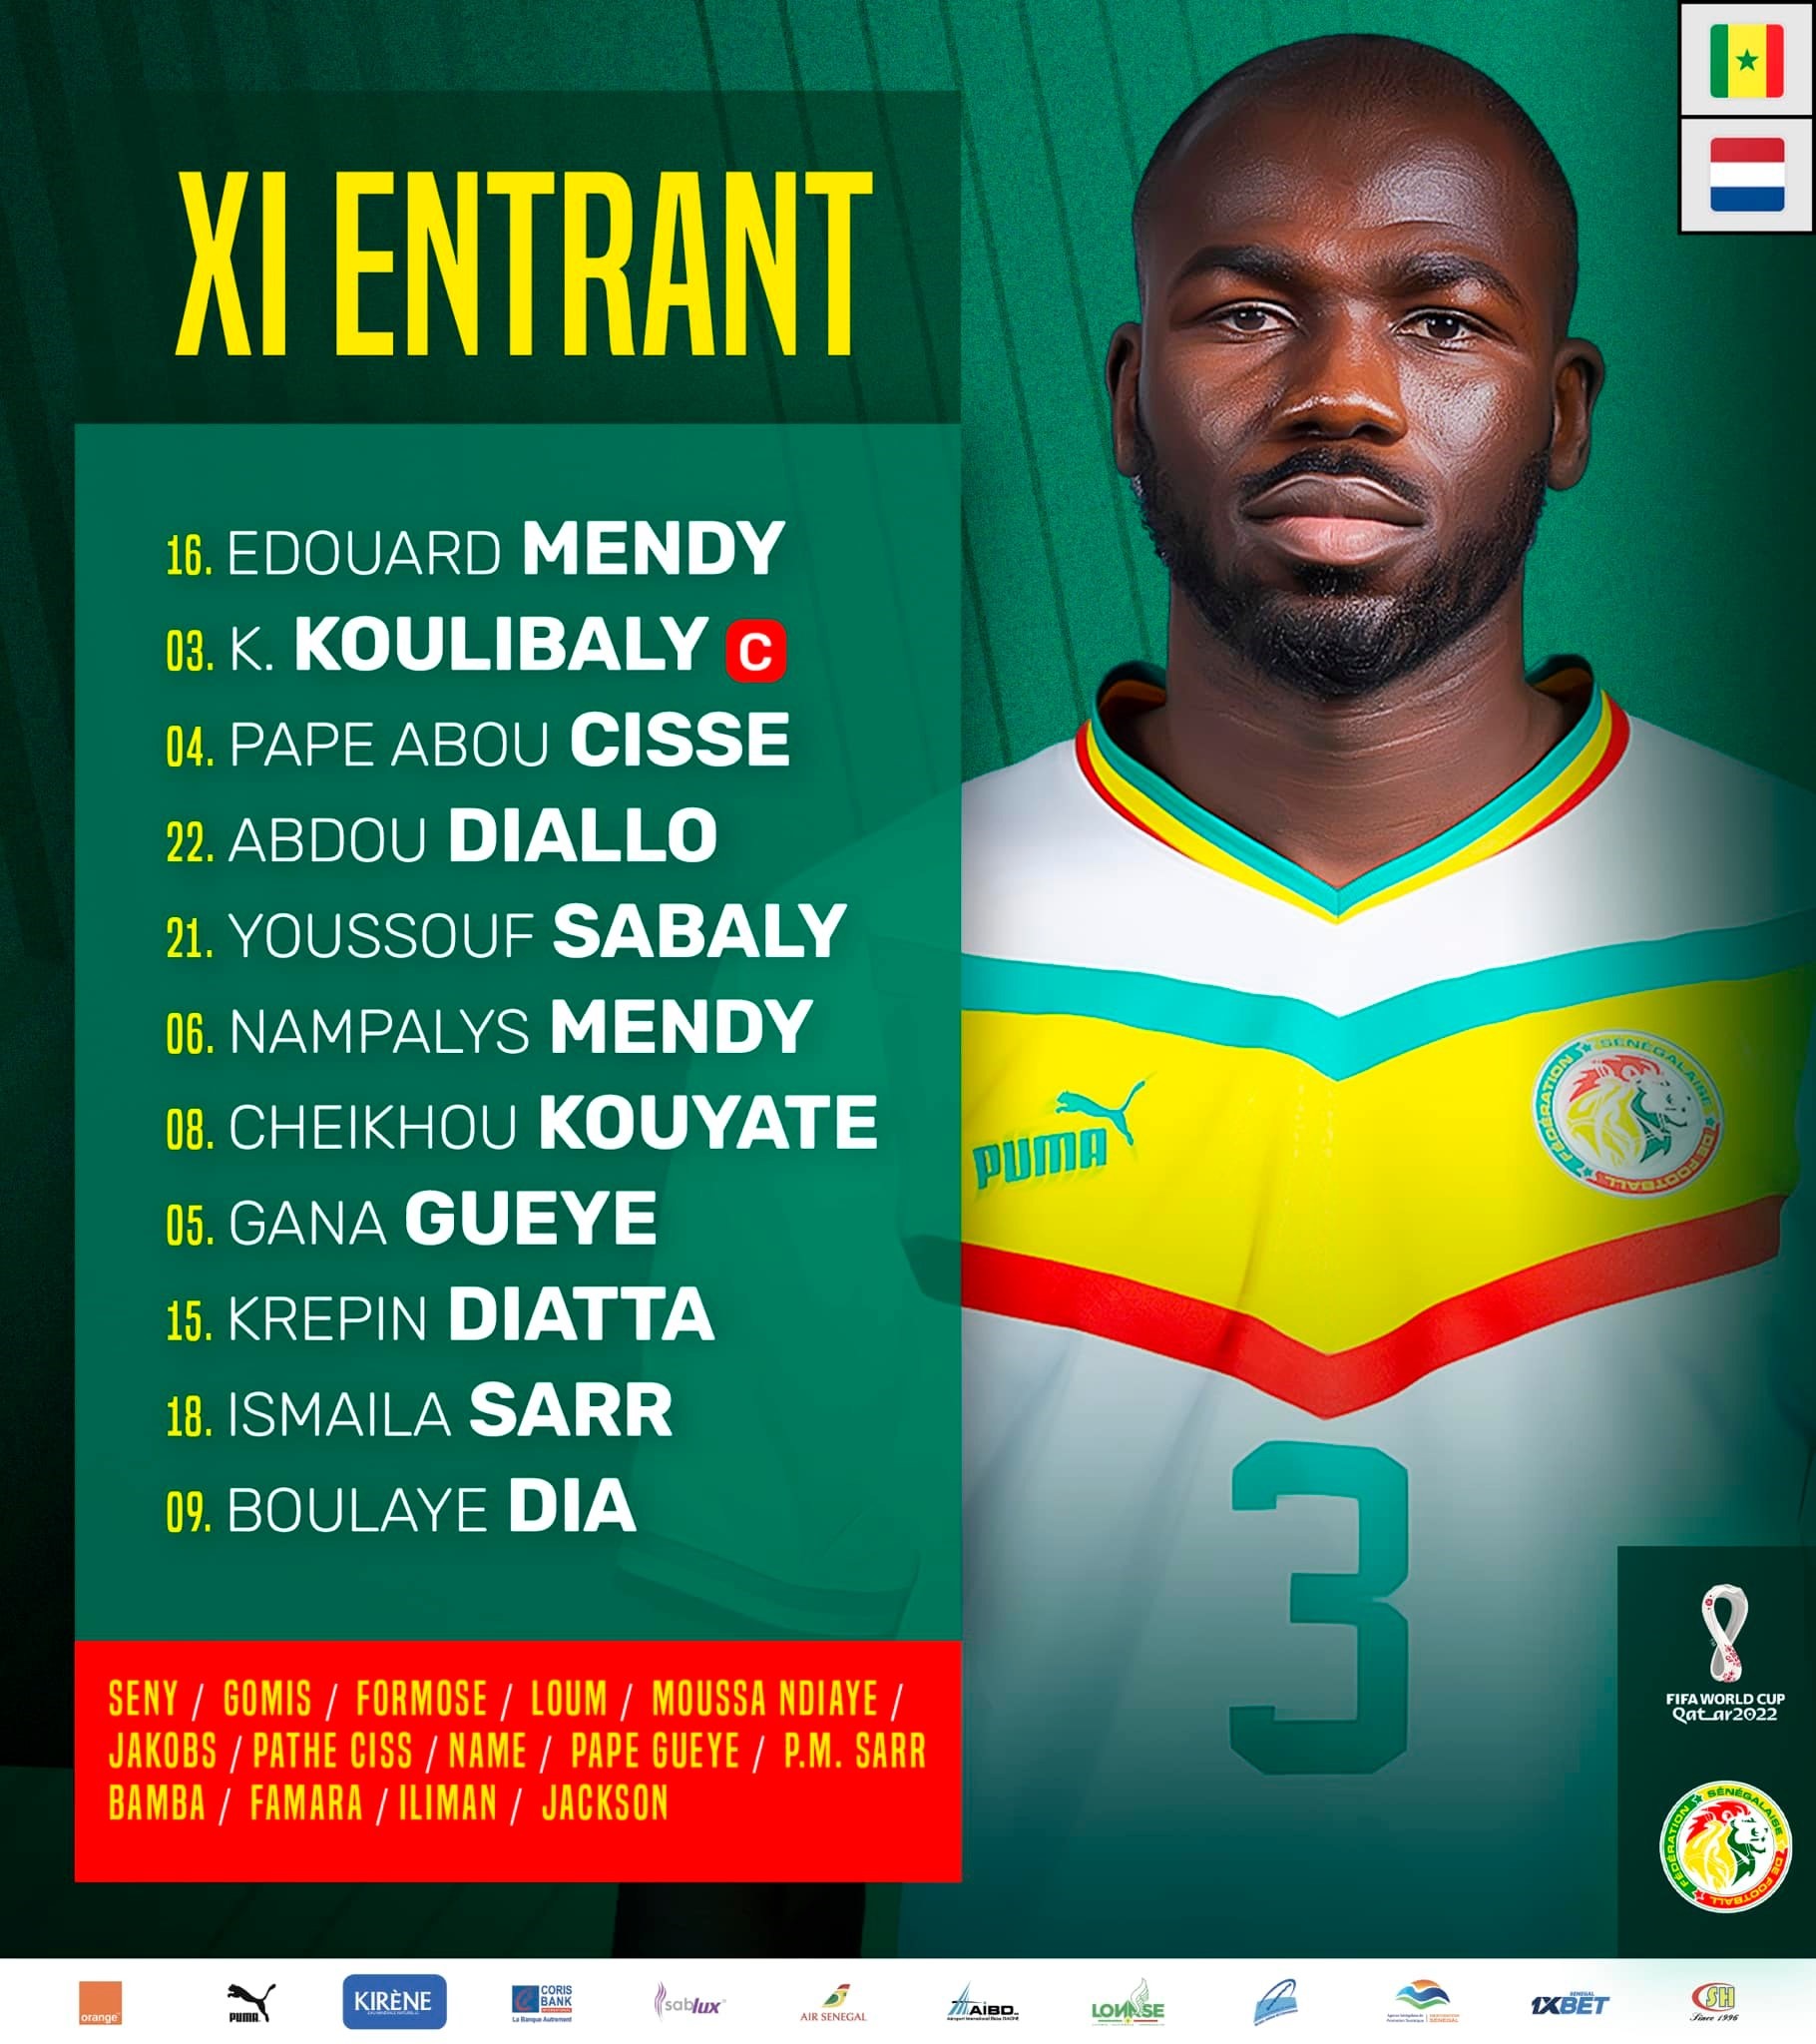 Đội hình xuất phát của tuyển Senegal. Ảnh: Facebook tuyển Senegal